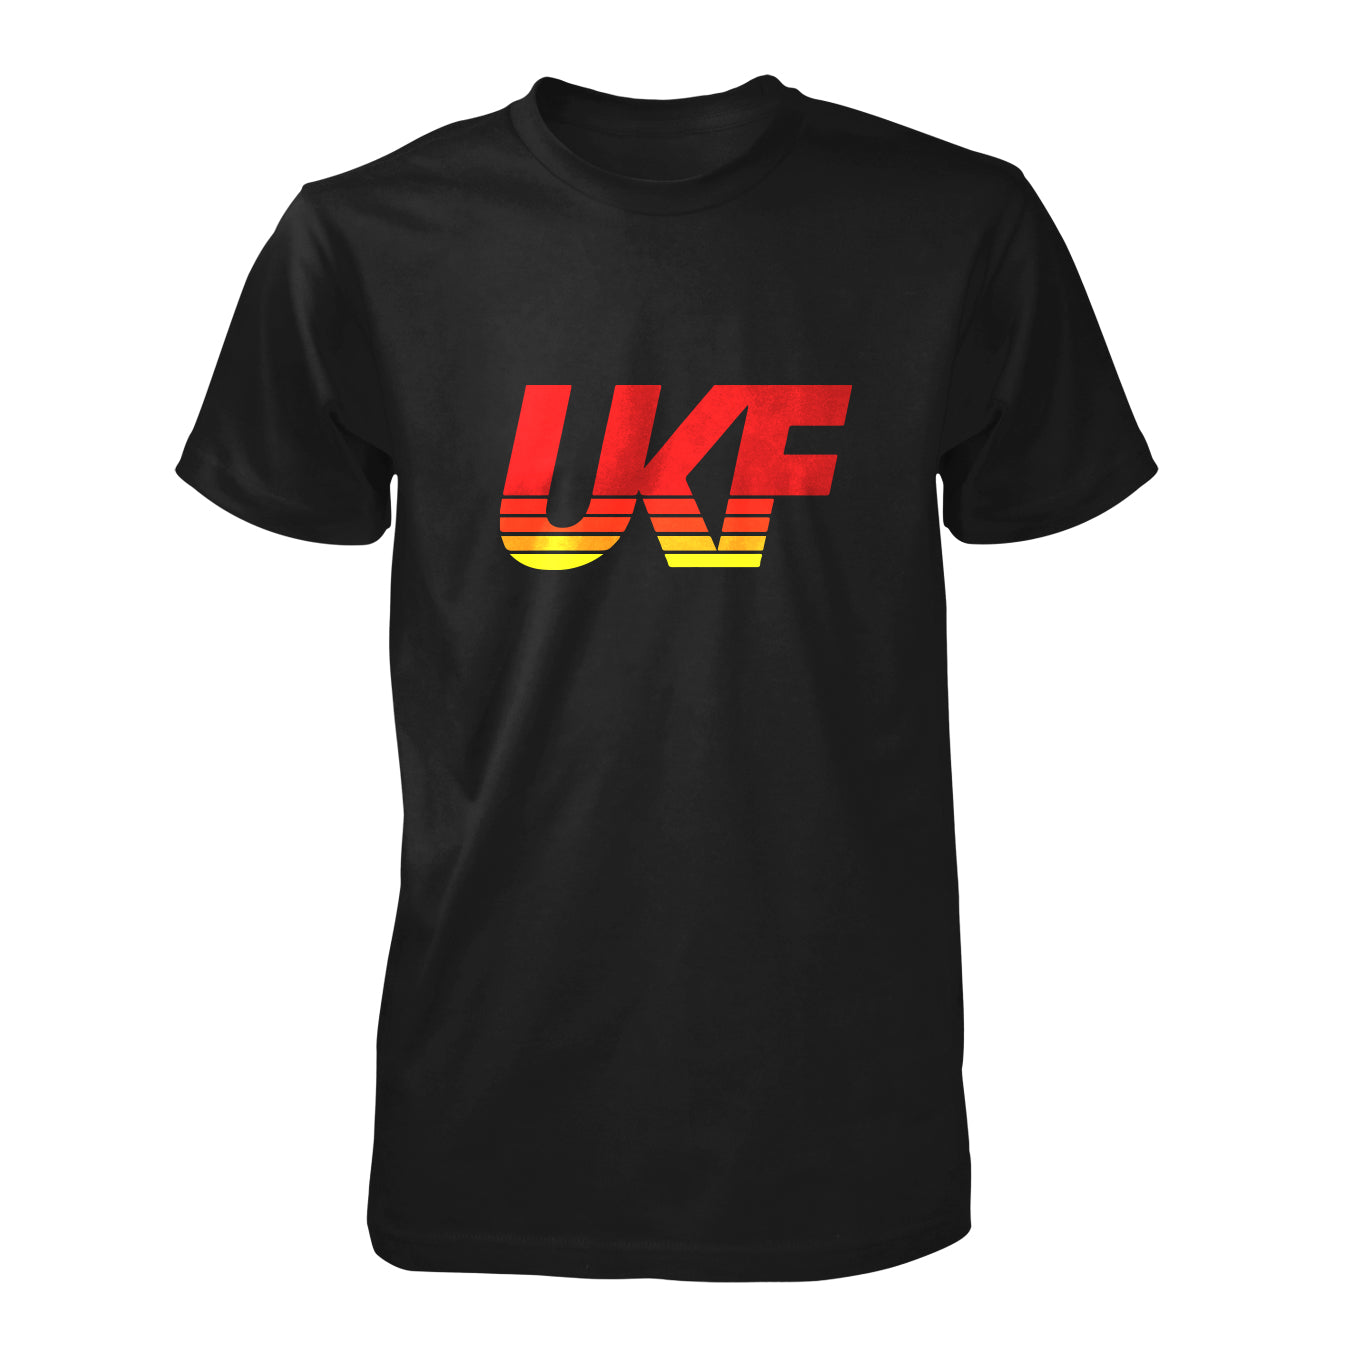 UKF Vintage Felt T-shirt